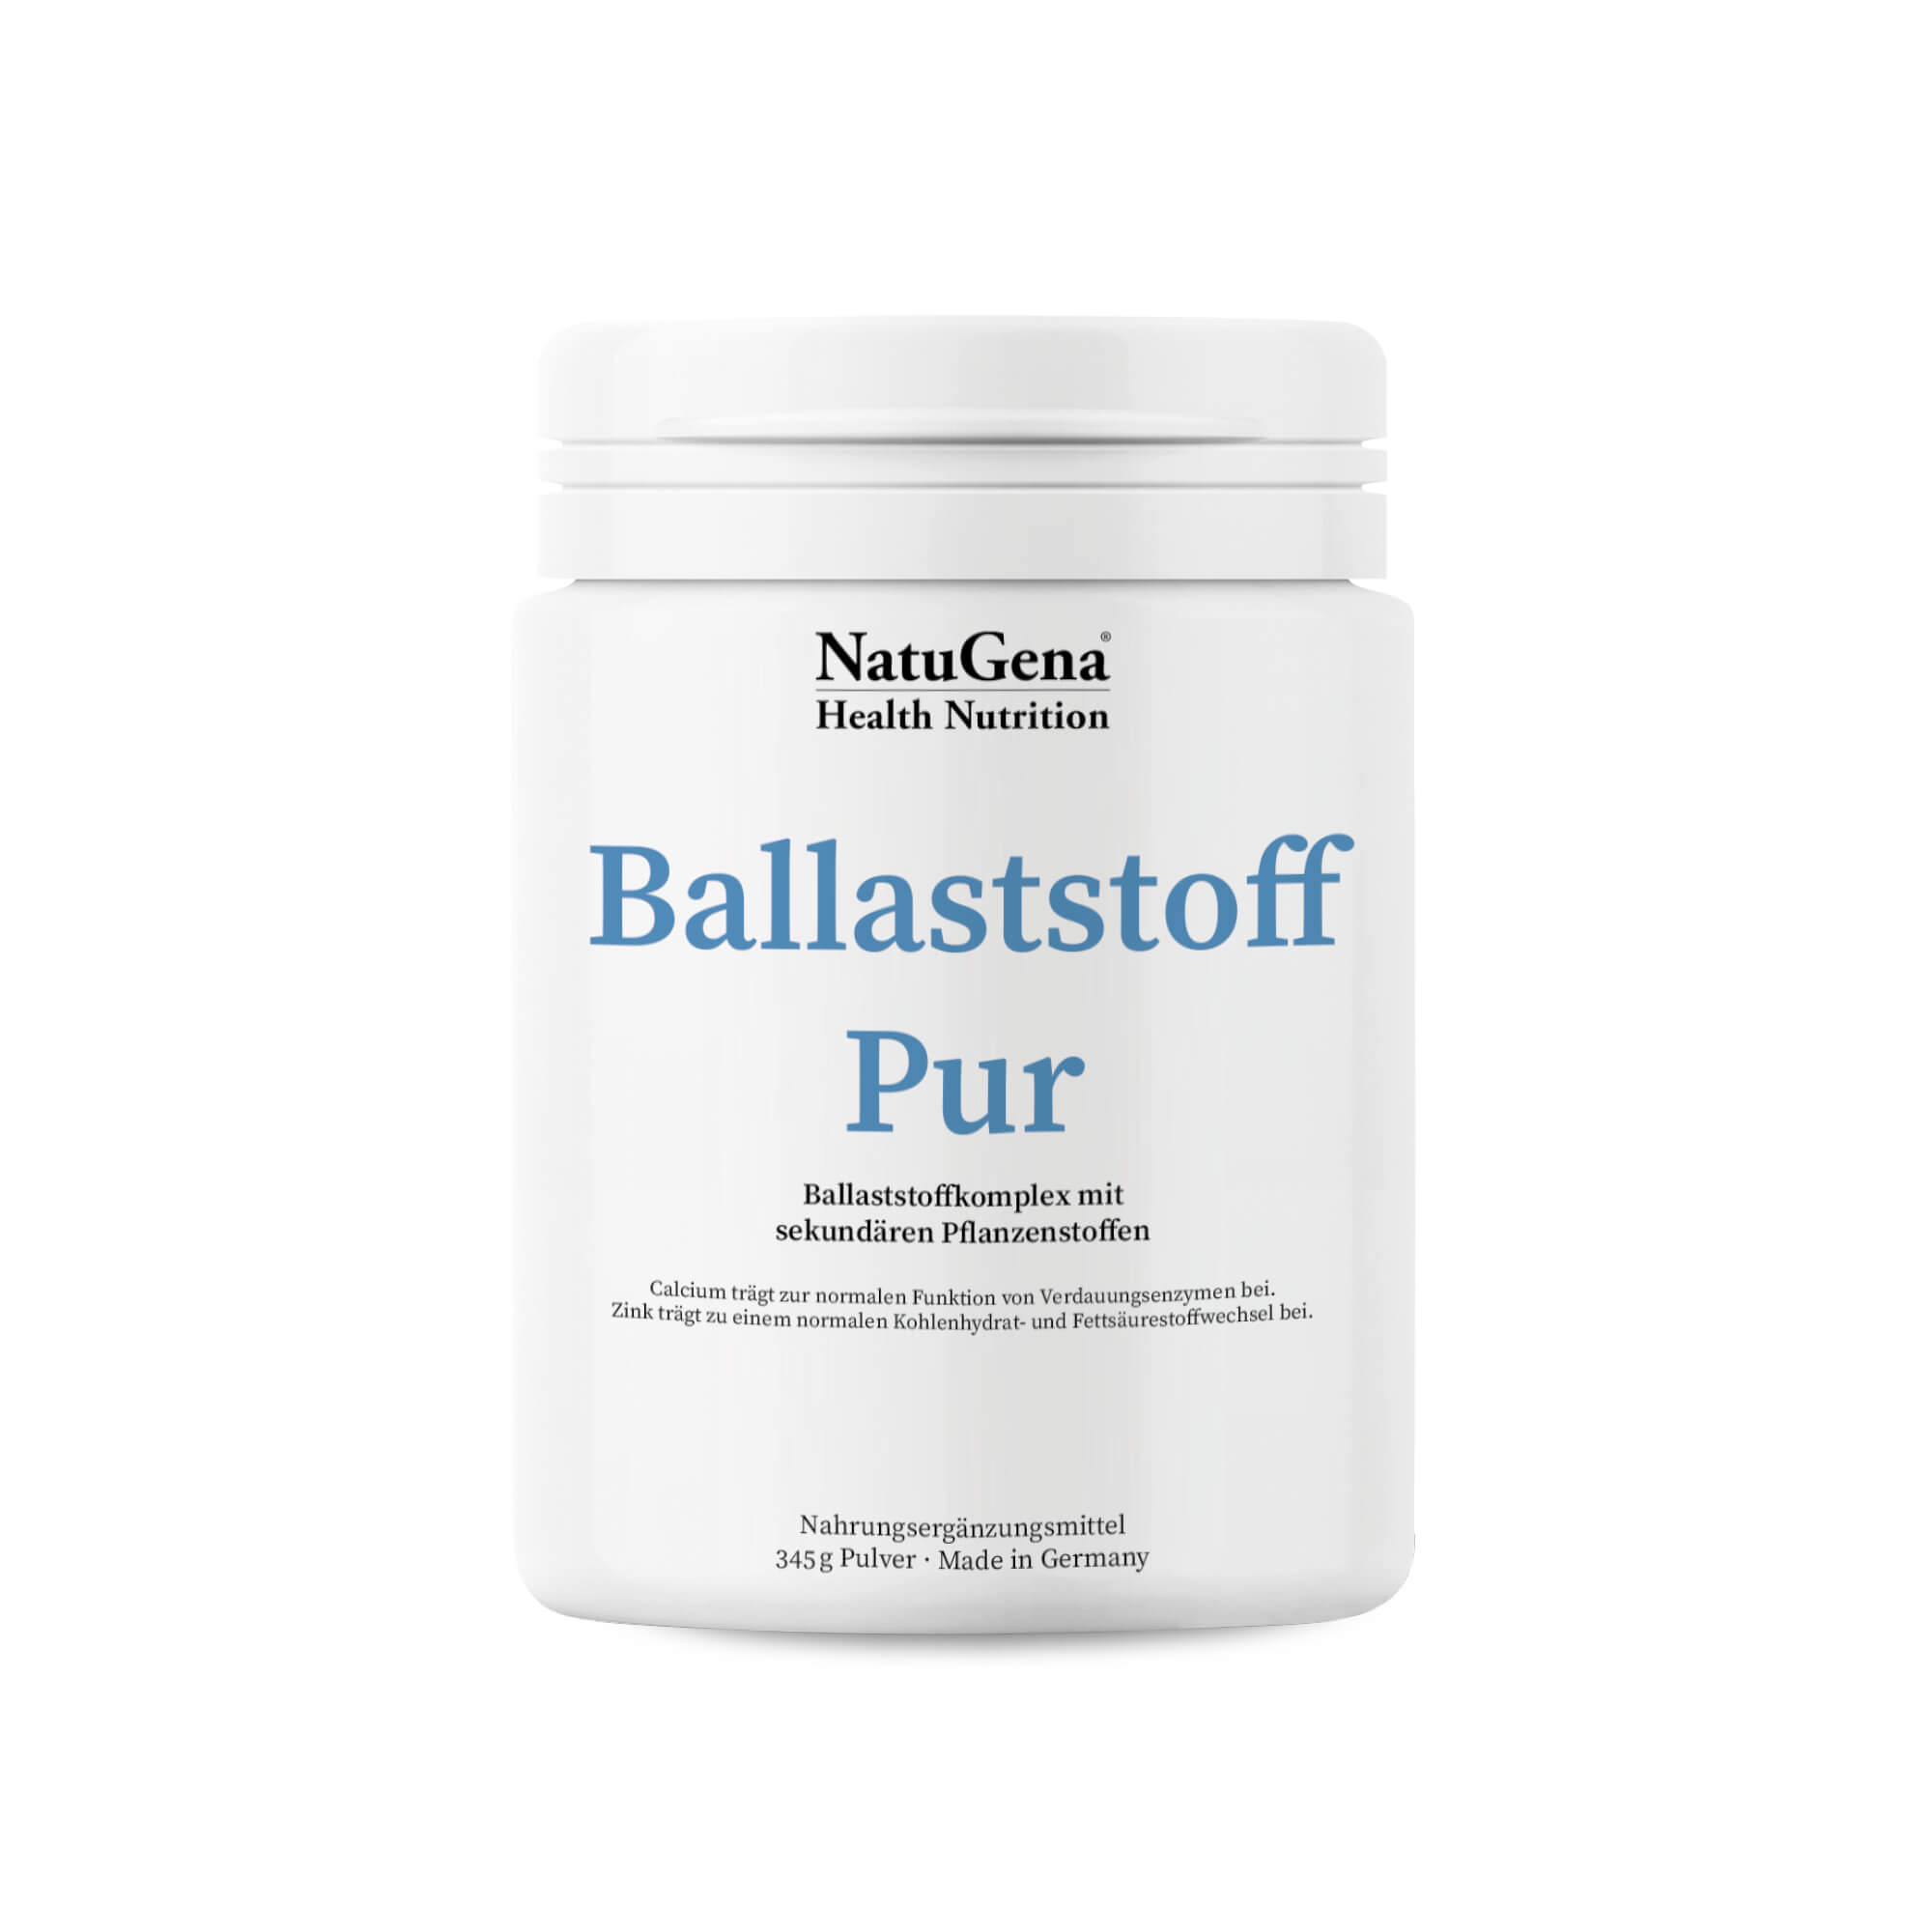 NatuGena BallaststoffPur | 345 g Pulver - Förderung der Darmgesundheit und Unterstützung empfindlicher Verdauungssysteme